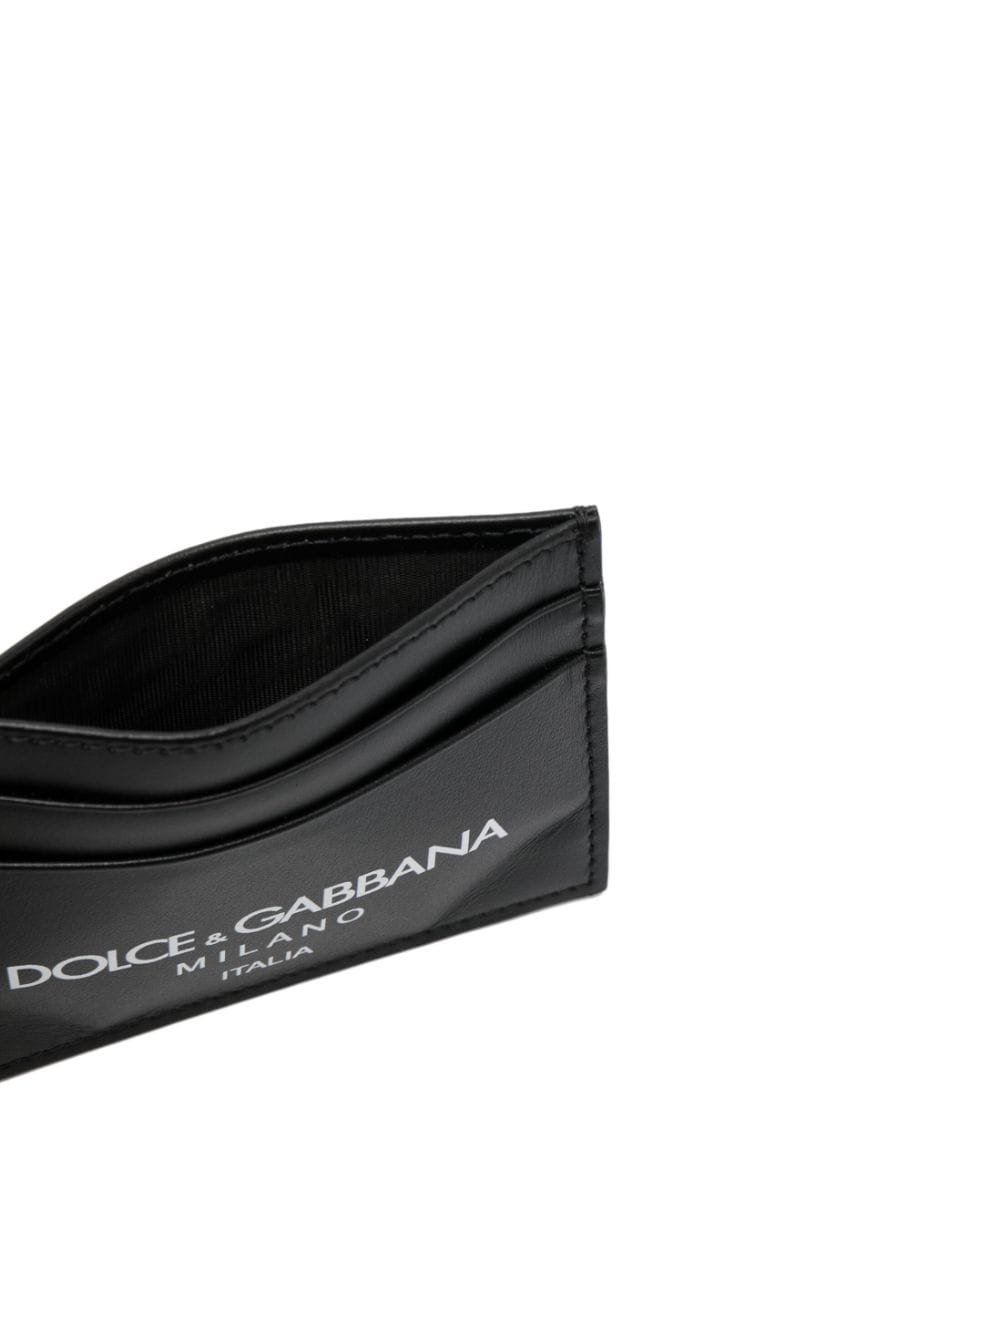 Dolce & Gabbana BP0330 Man  Wallets - Zuklat